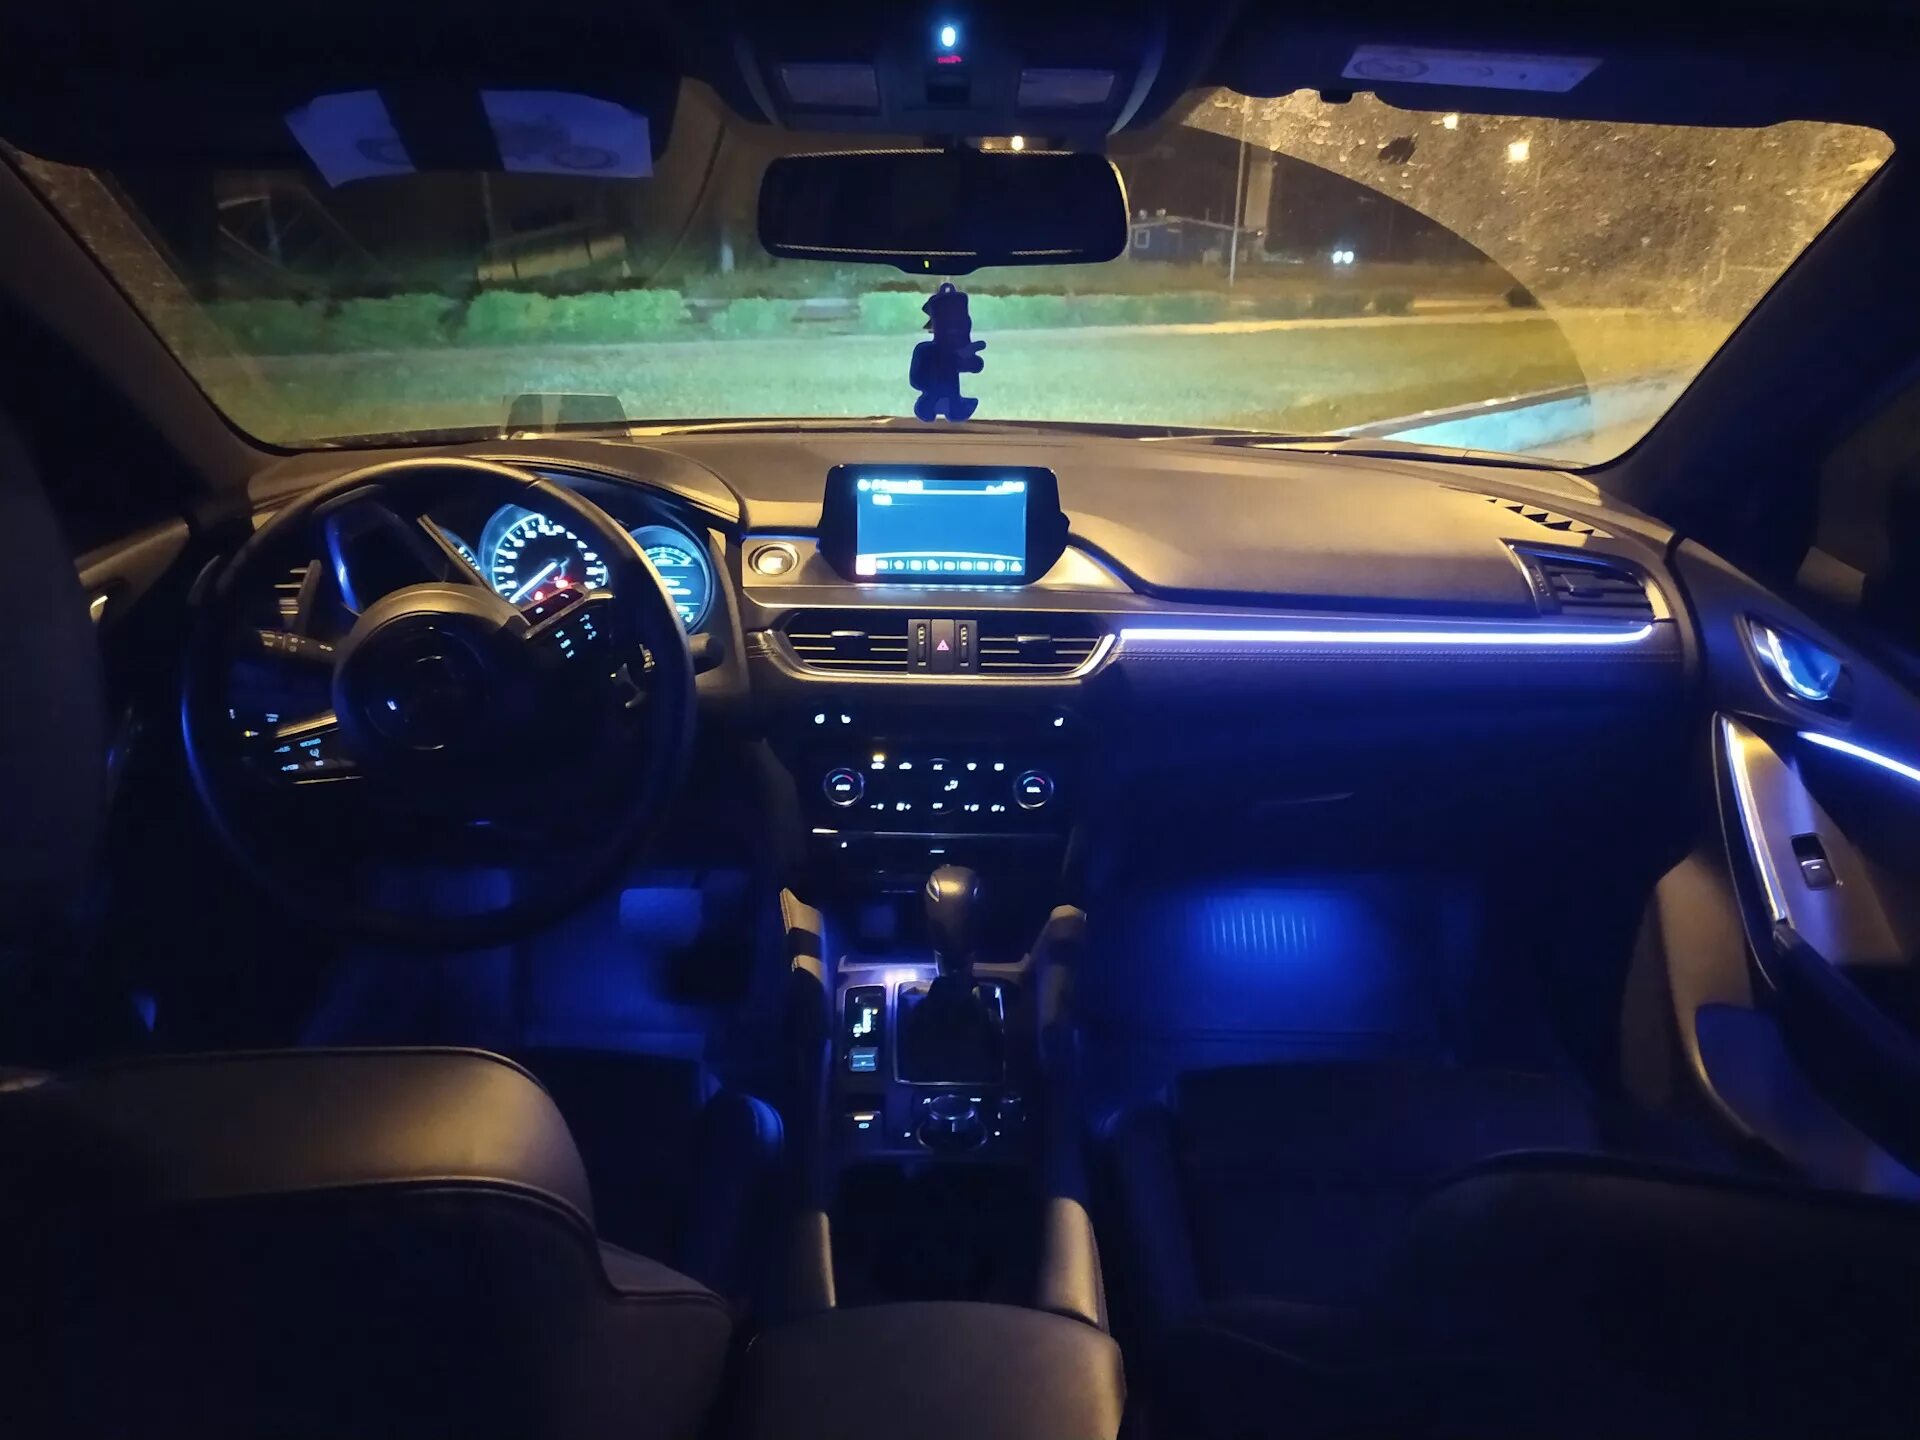 Подсветка салона Мазда 6 GH. RGB подсветка салона Mazda 6 GH. Volvo xc90 Ambient Lighting. Ambient Light Mazda 6. Подсветить 6